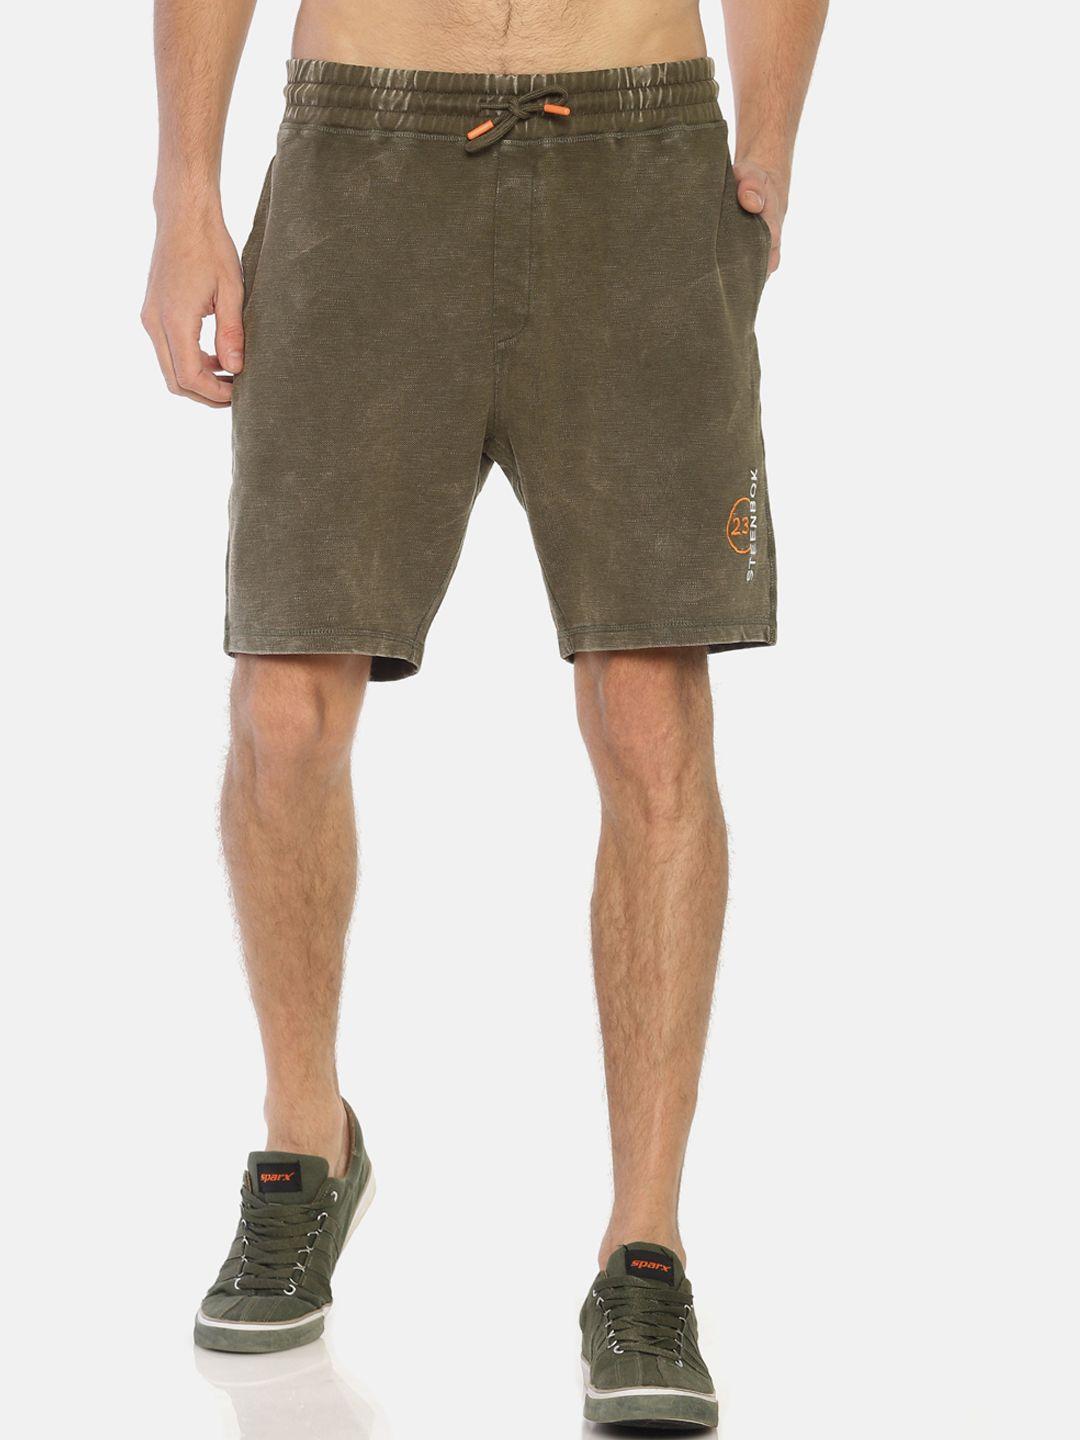 steenbok-men-olive-green-solid-regular-shorts